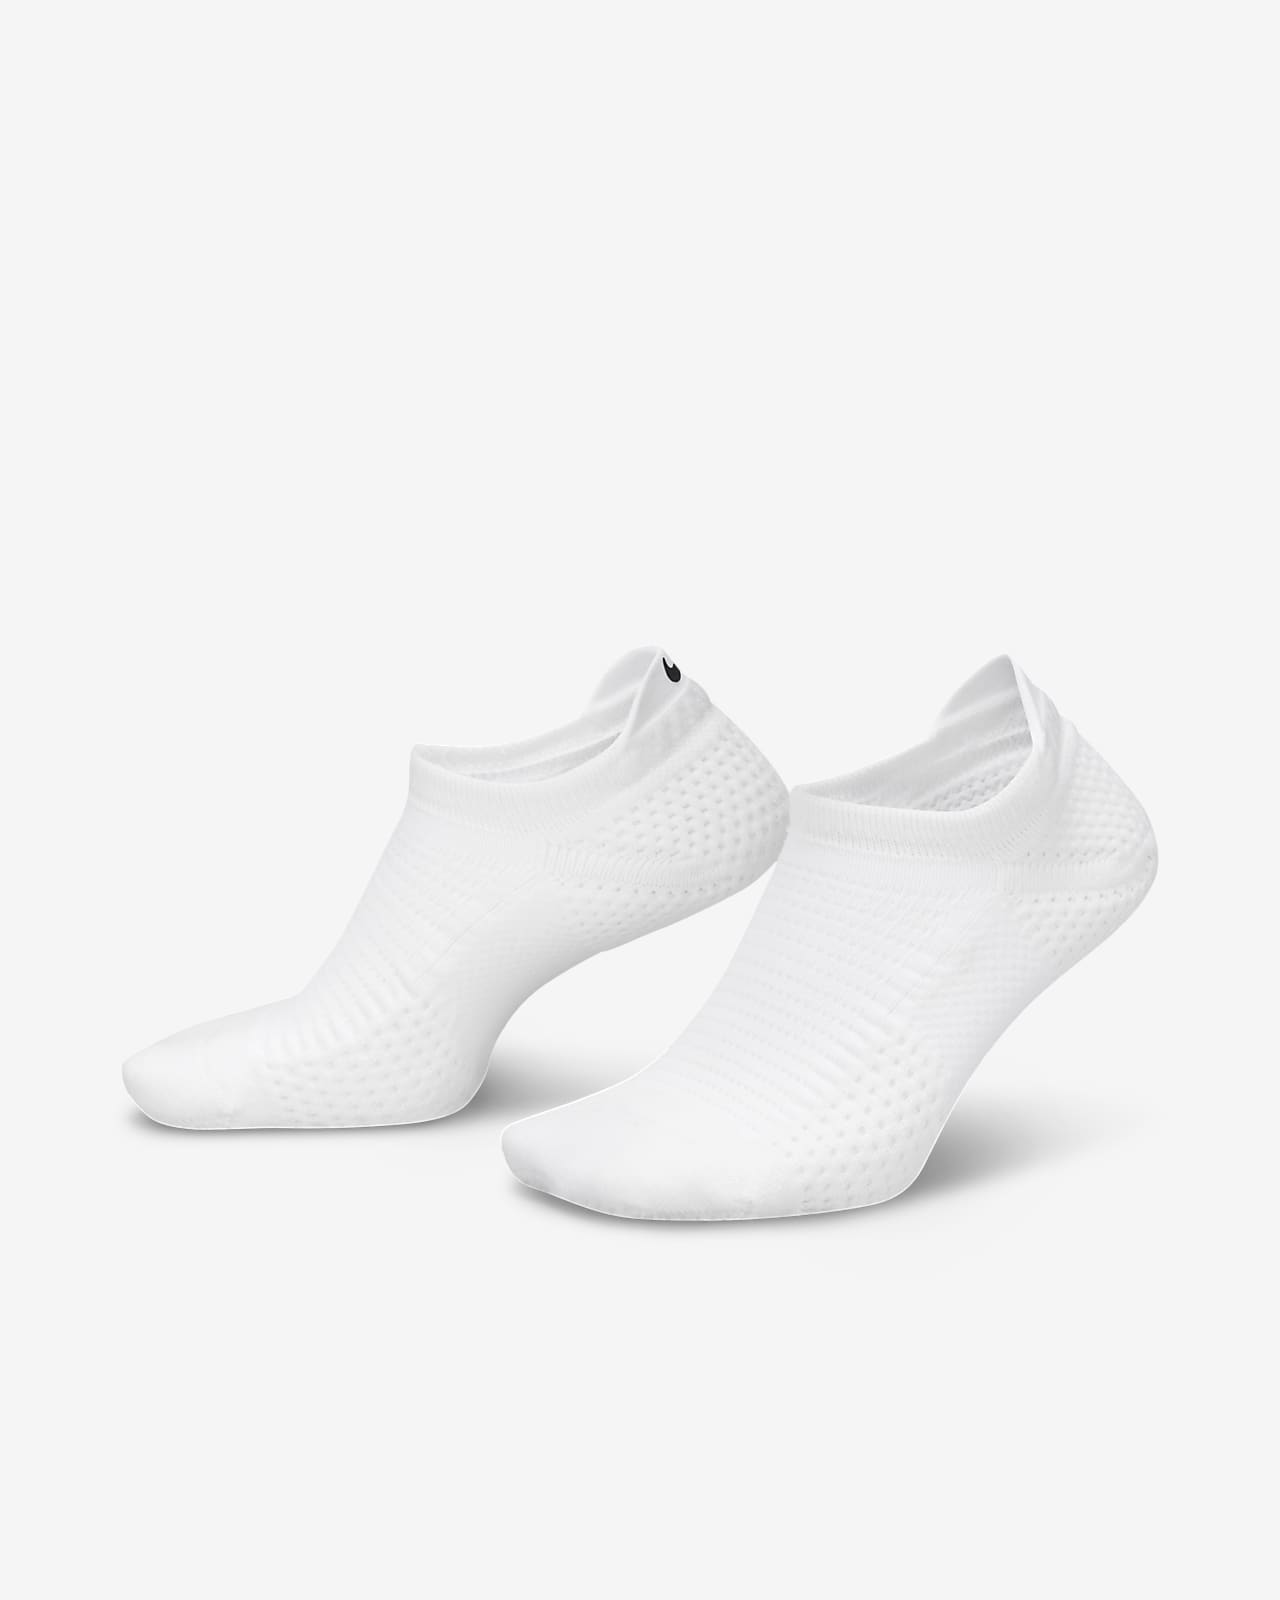 Κάλτσες μεσαίου ύψους με αντικραδασμική προστασία Dri-FIT ADV Nike Unicorn (ένα ζευγάρι)